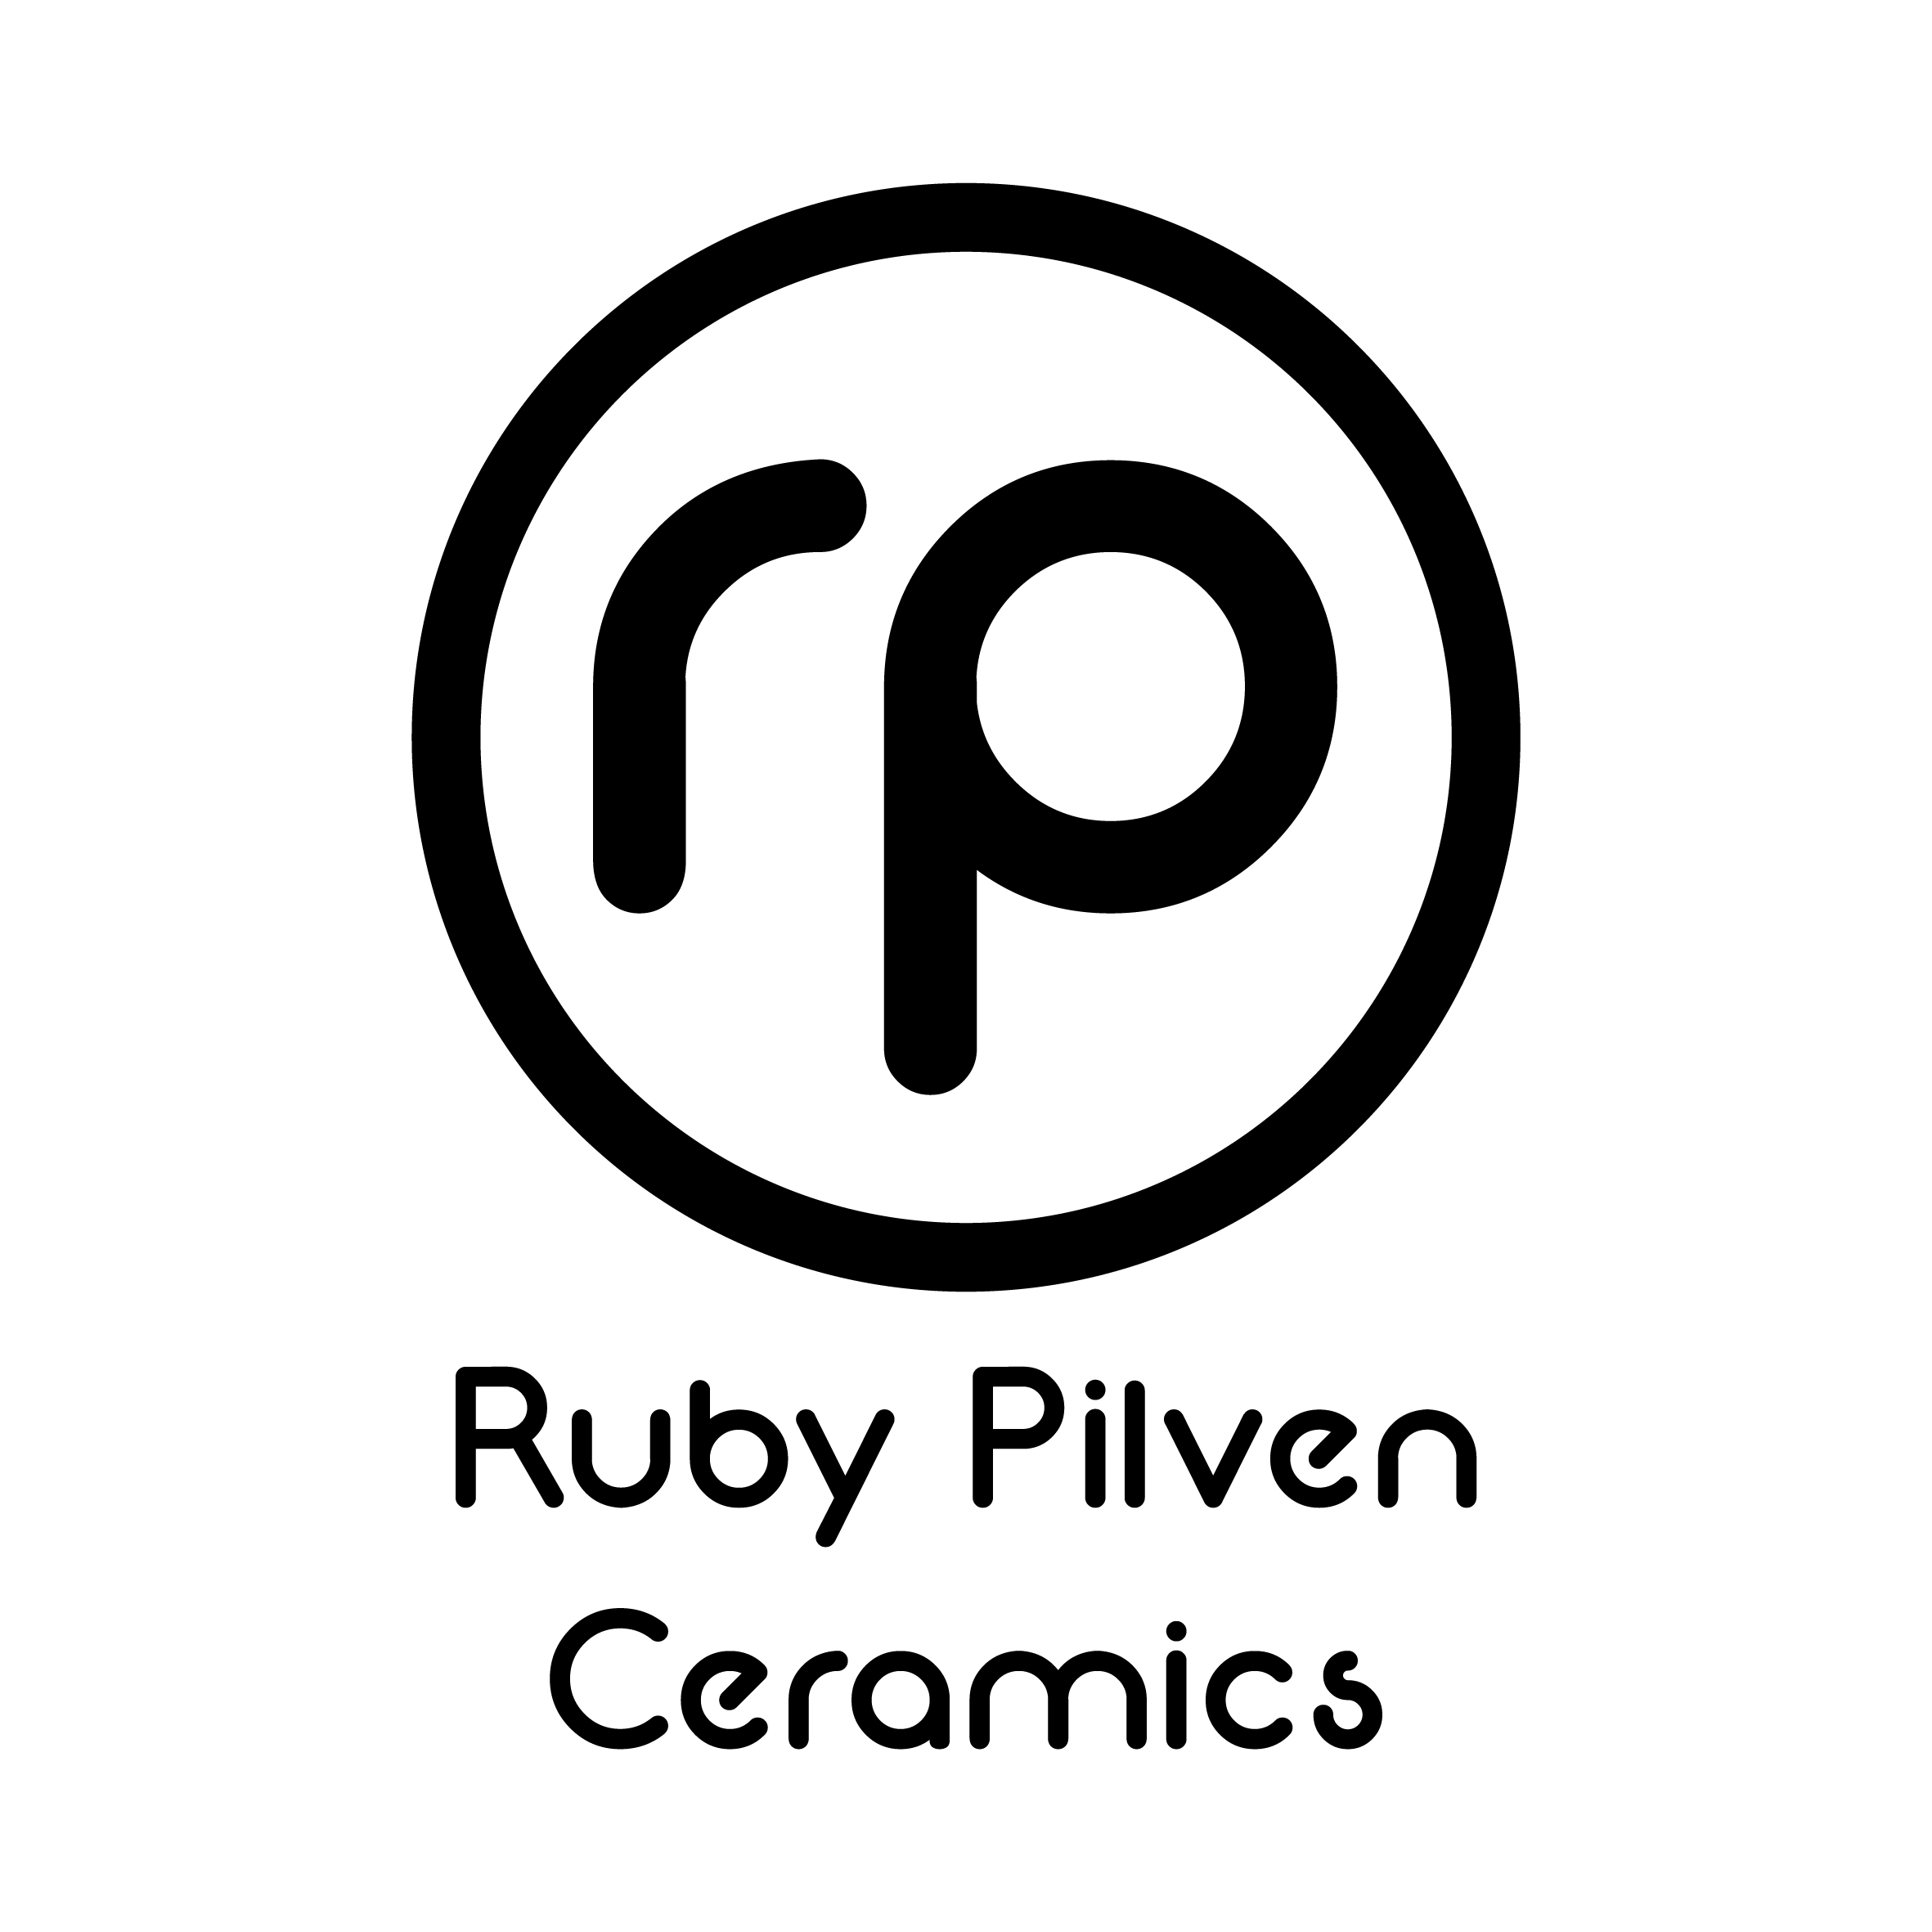 Ruby Pilven